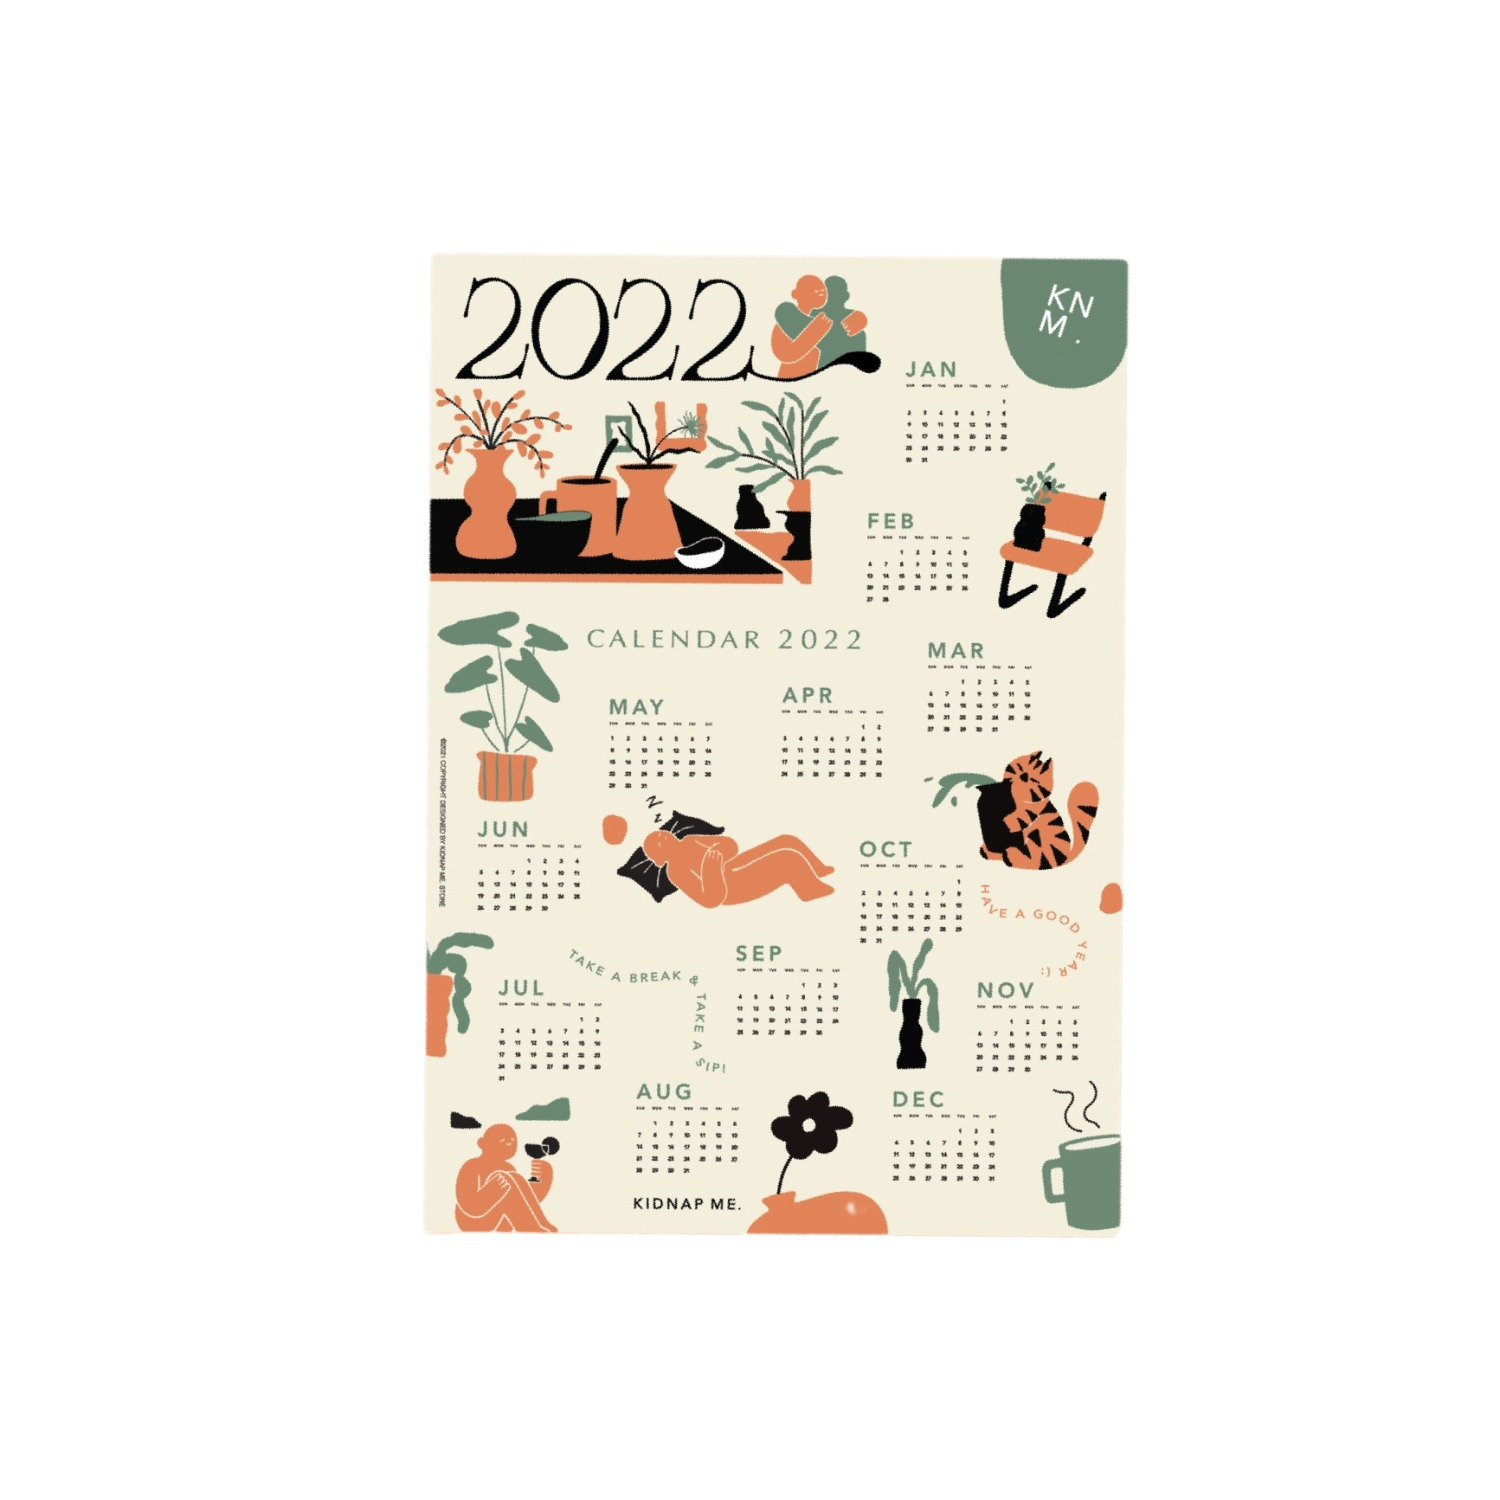 2022 Calendar Poster